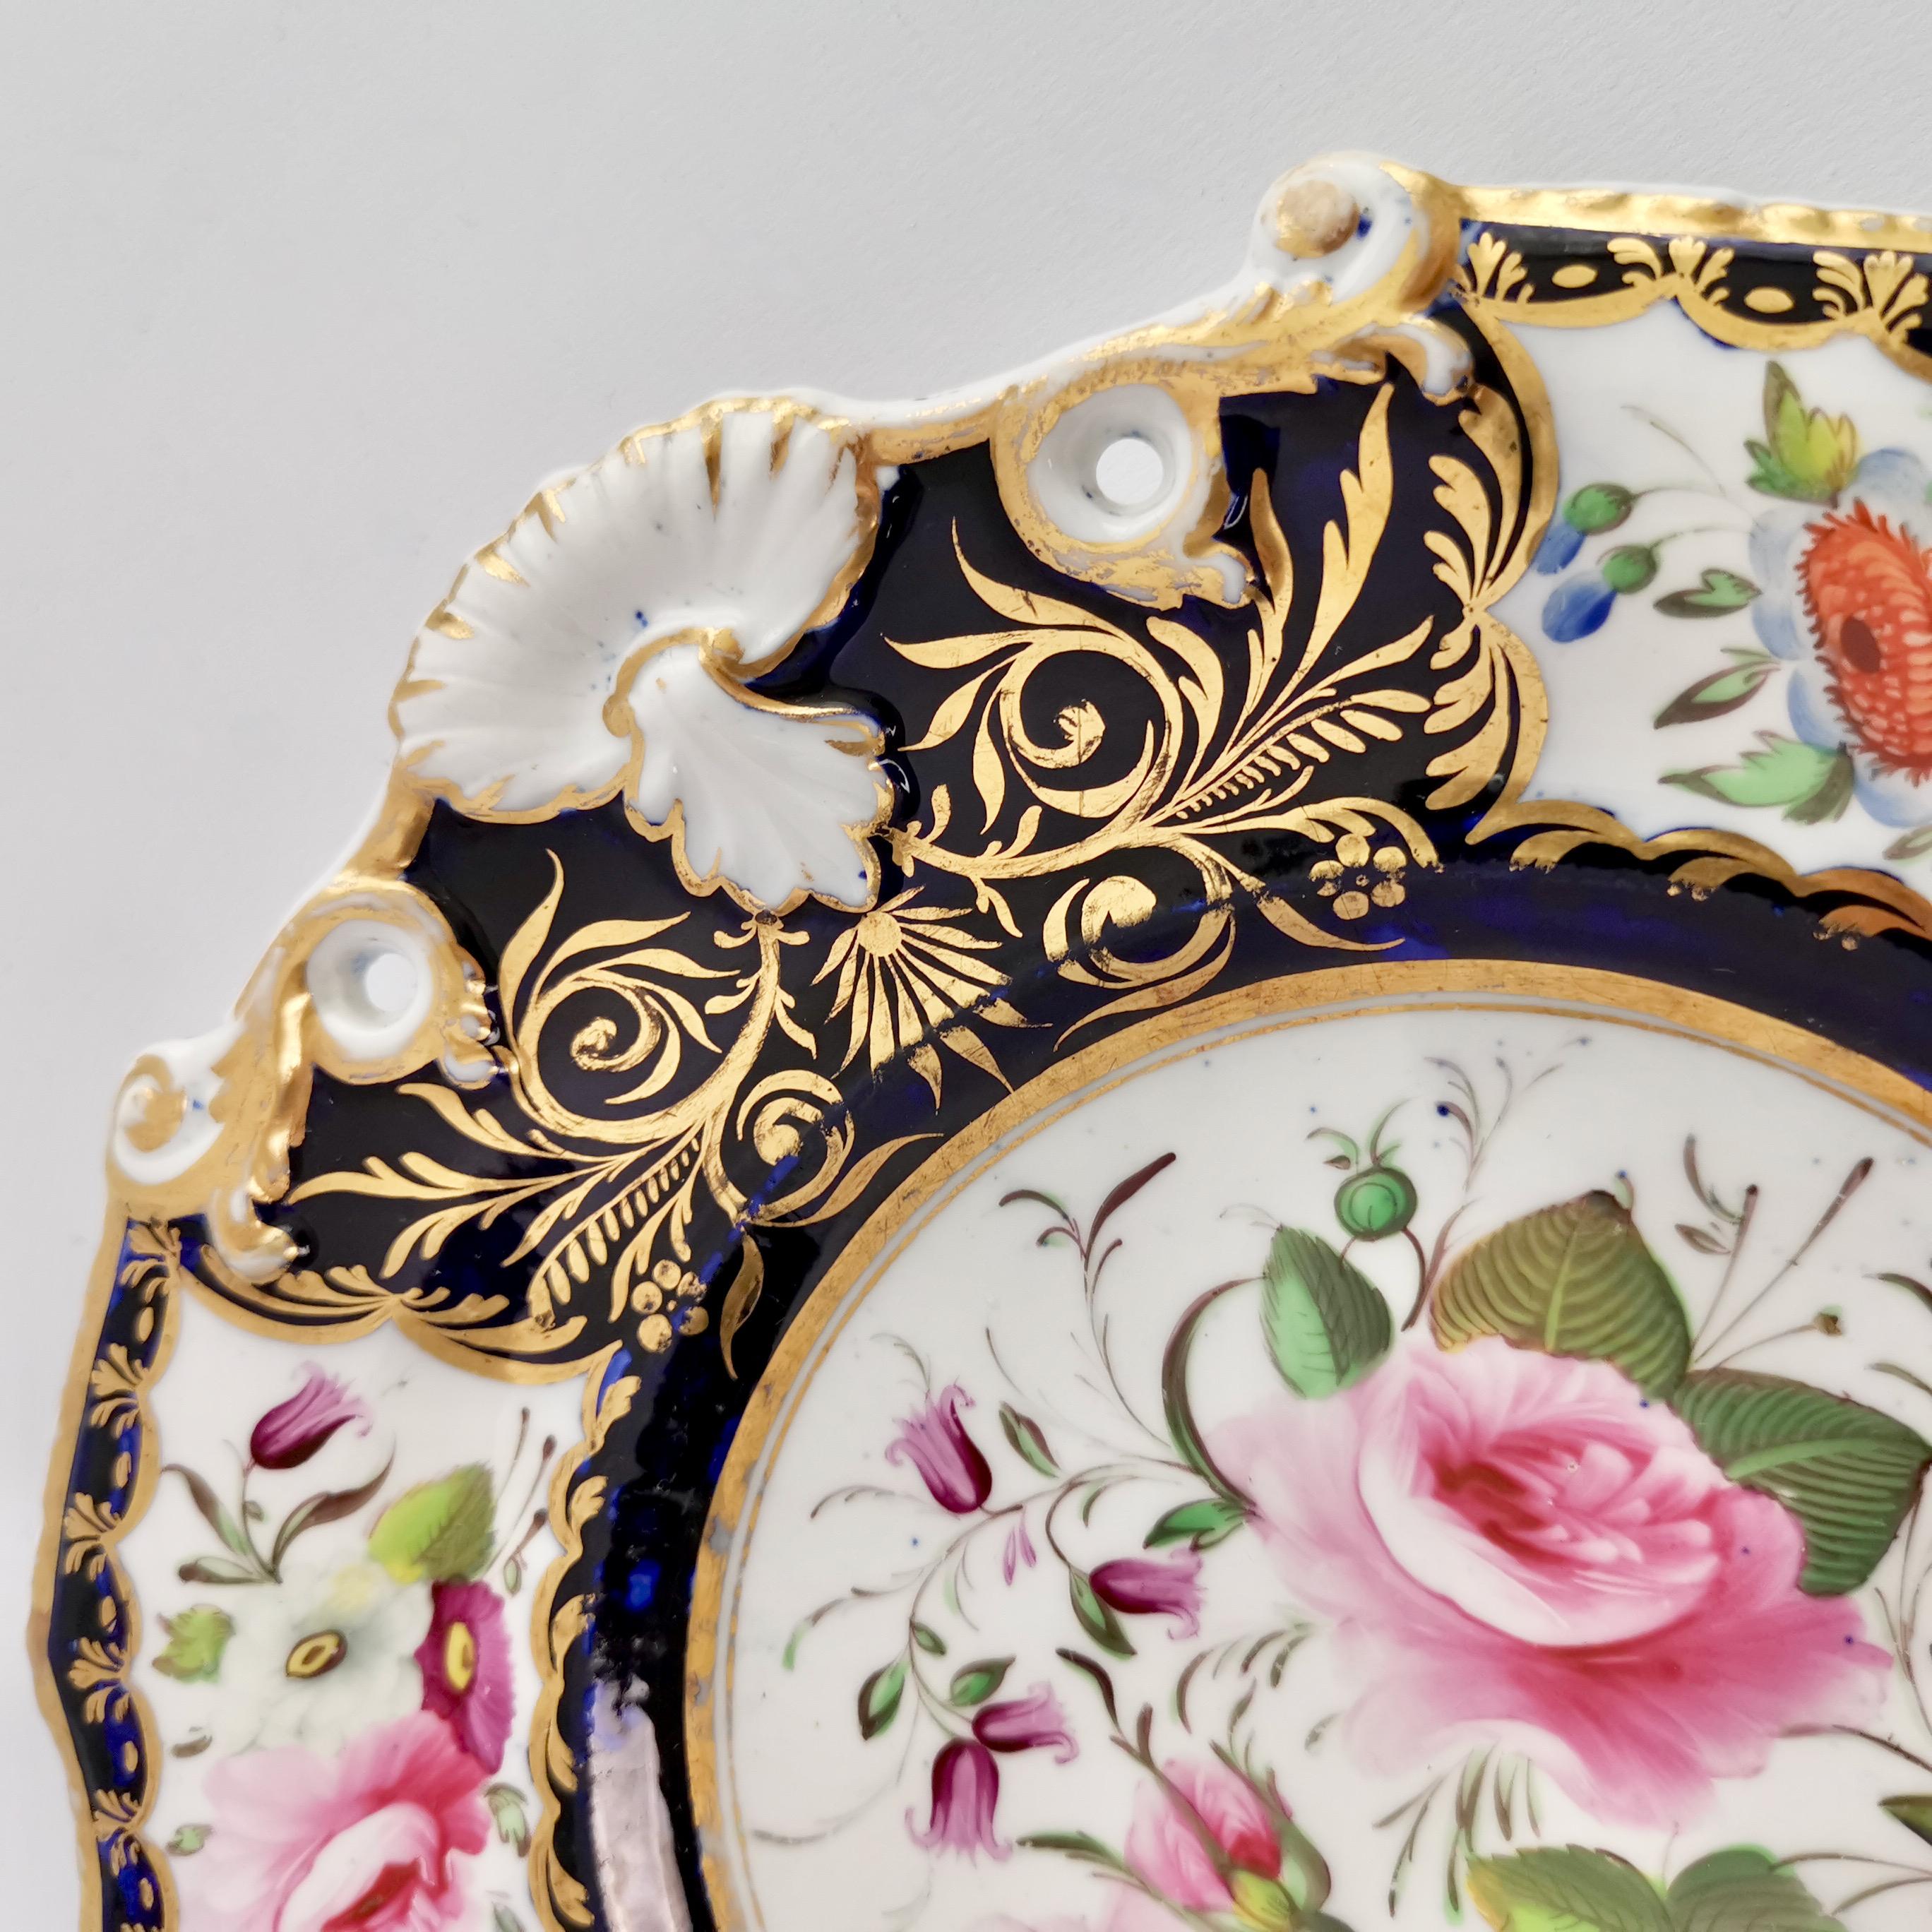 New Hall Porcelain Dessert Service, Cobalt Blue with Flowers, Regency 1824-1830 13